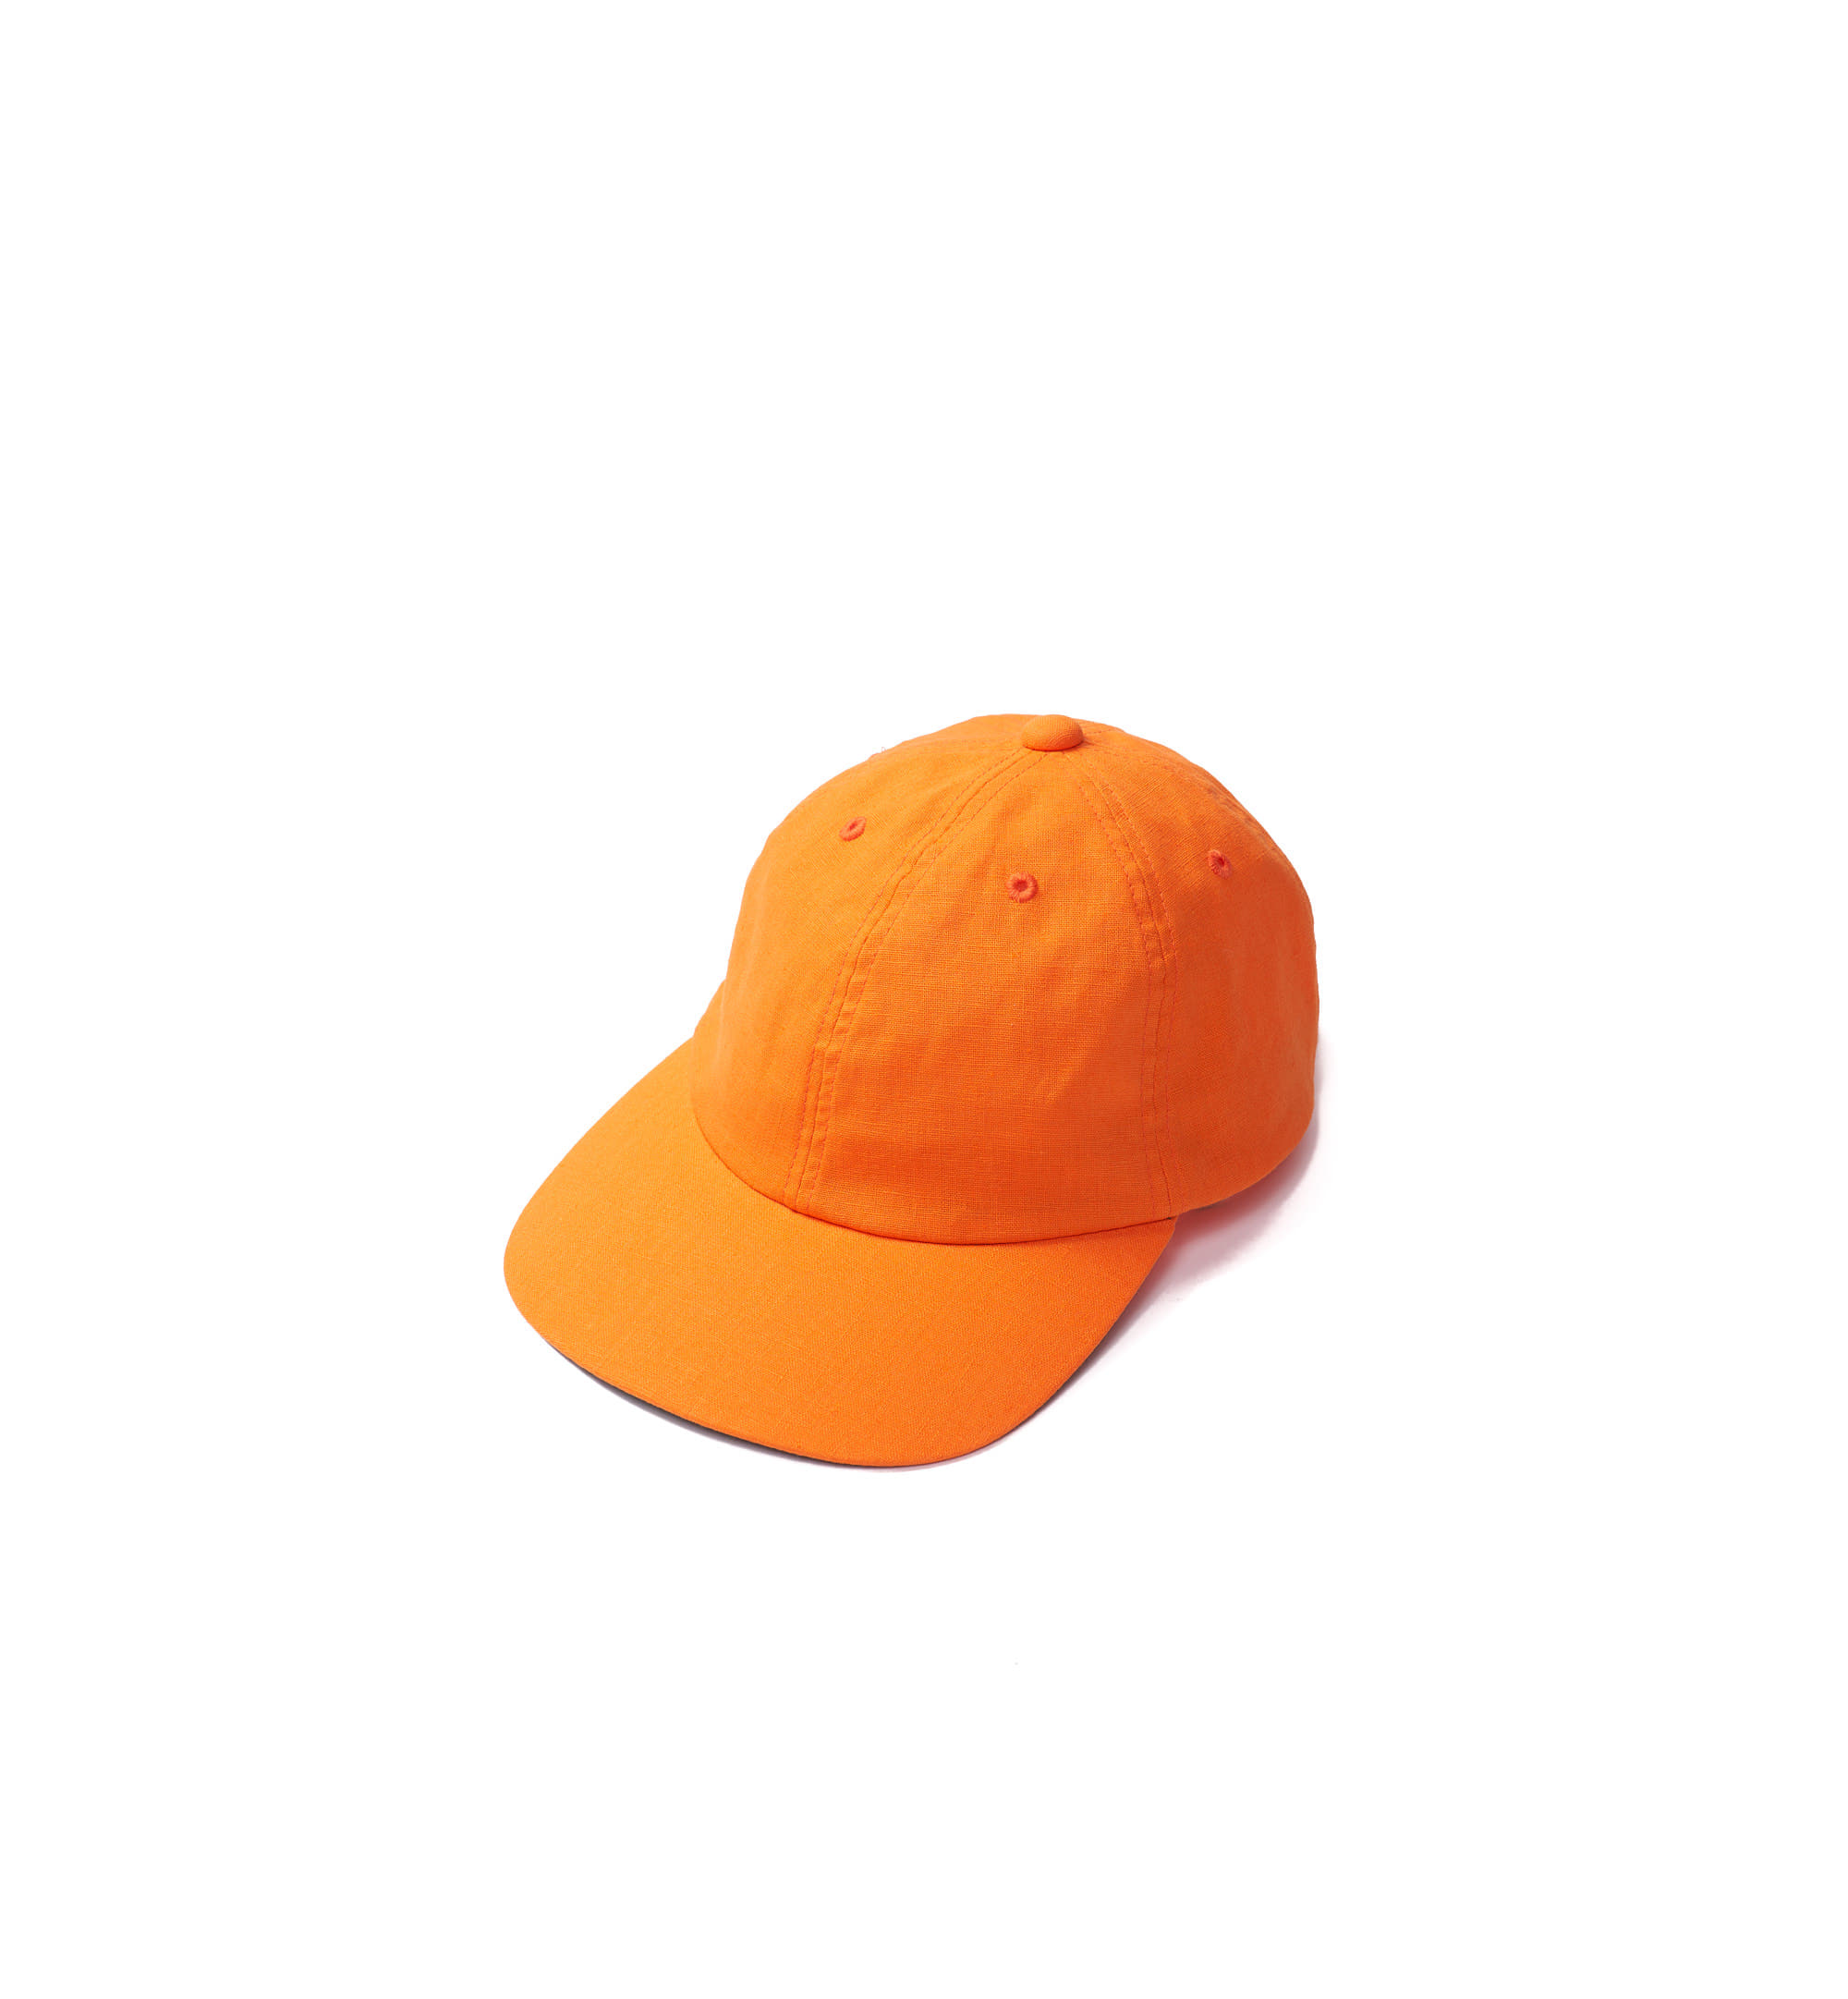 Tackle Cap Cotton/Linen Orange